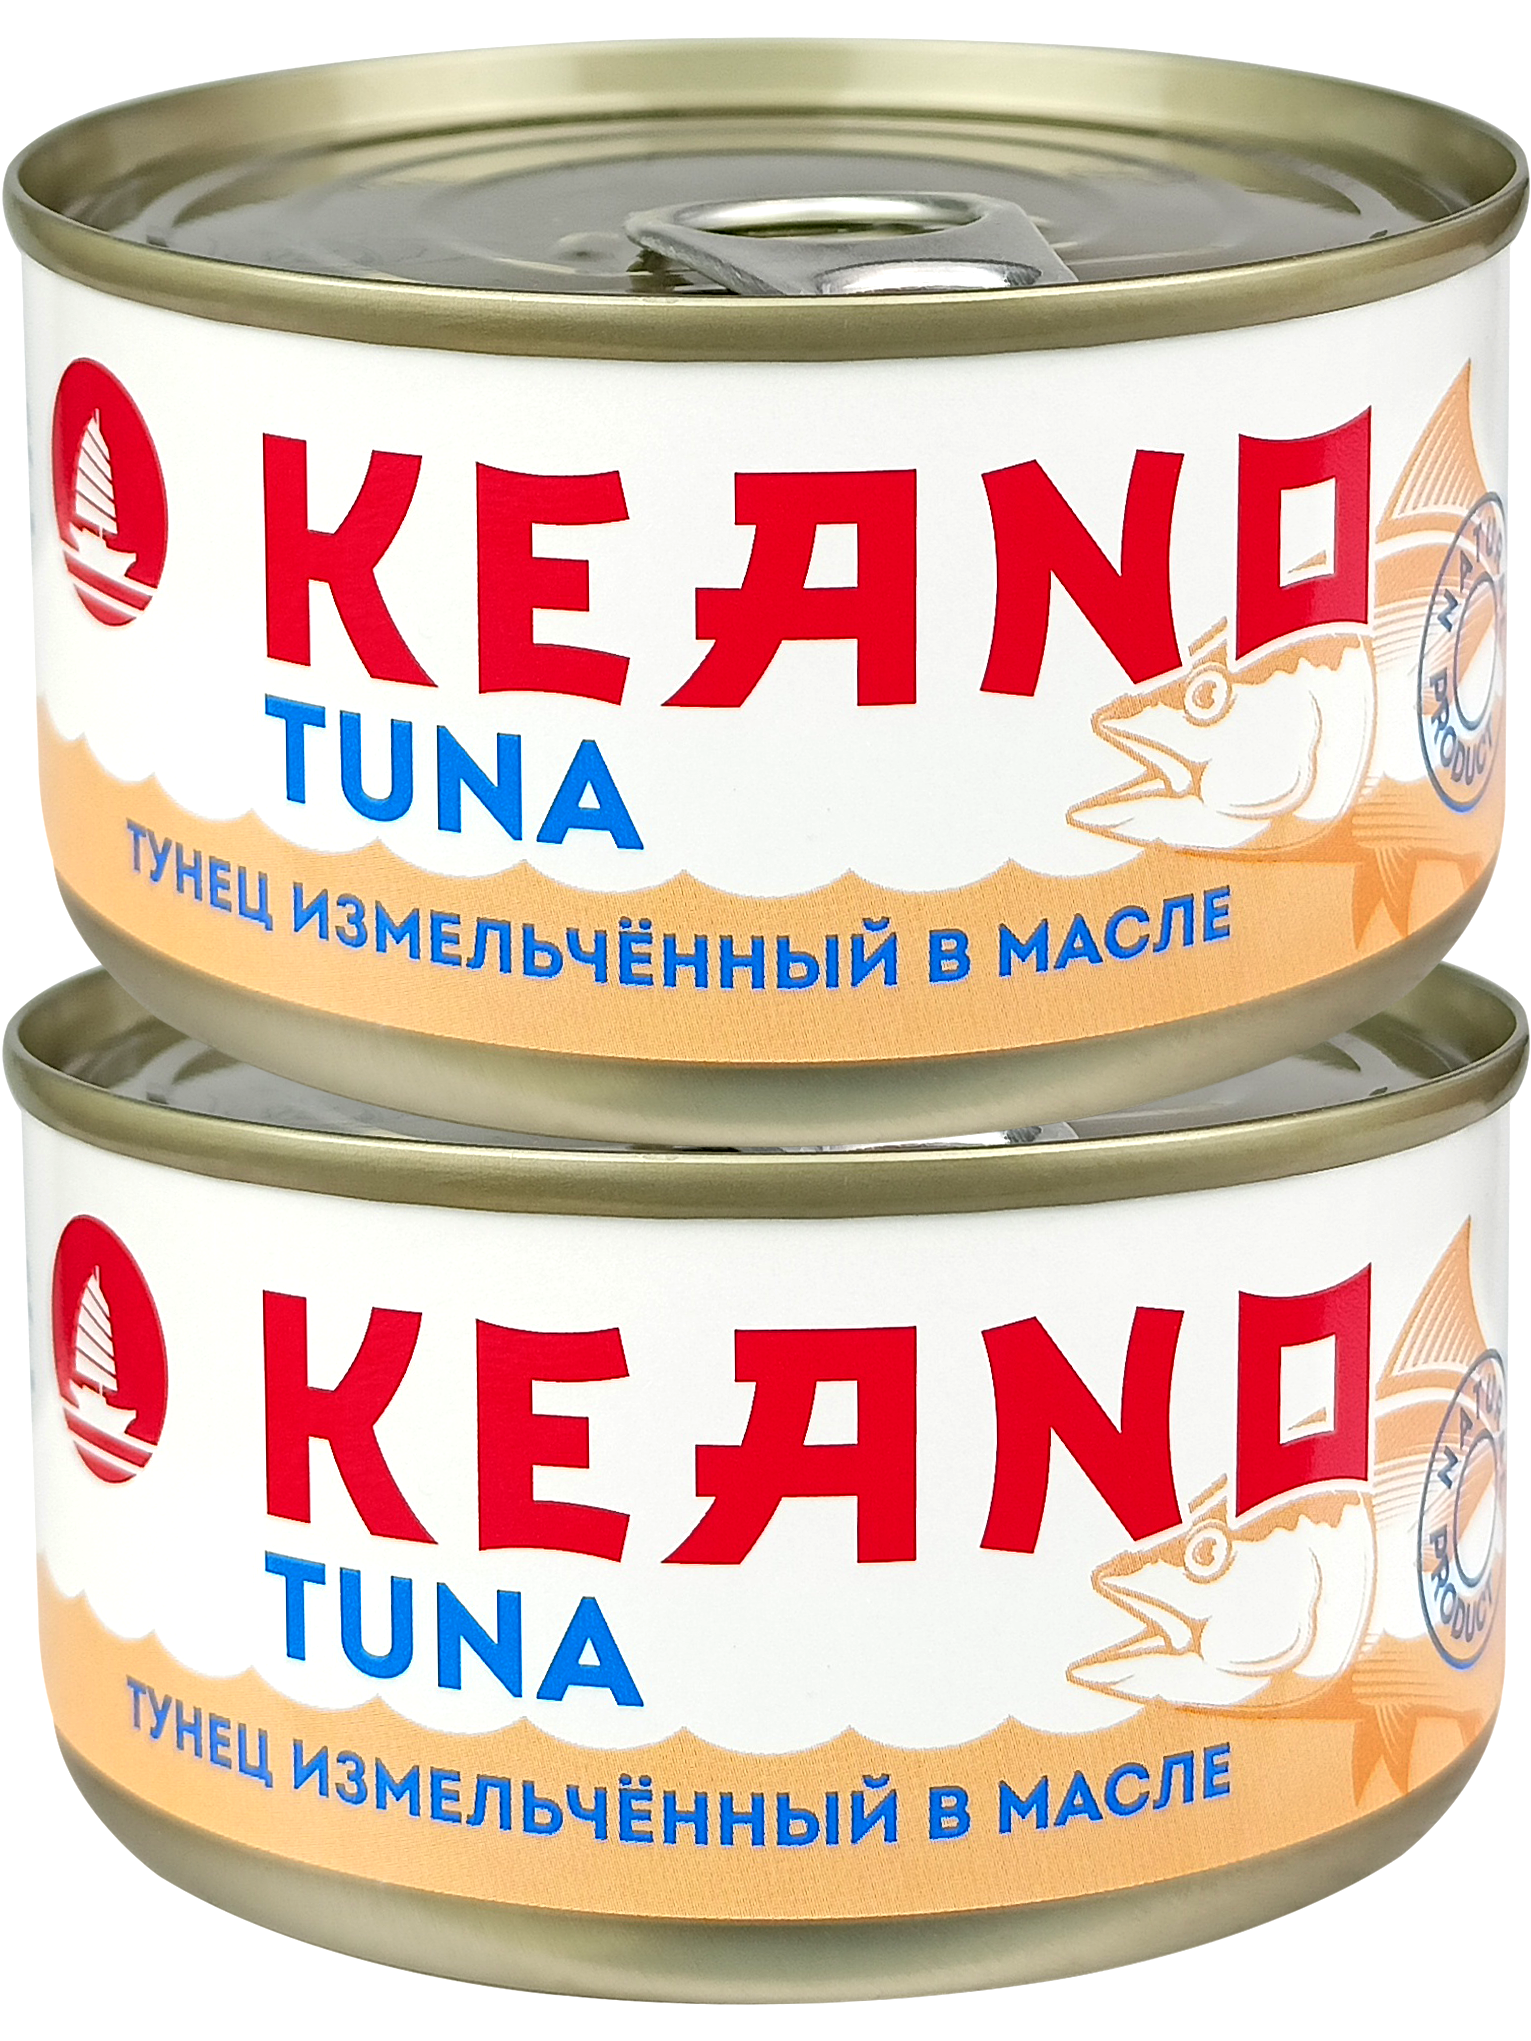 Консервы рыбные Keano - Тунец измельченный в масле 185 г - 2 шт